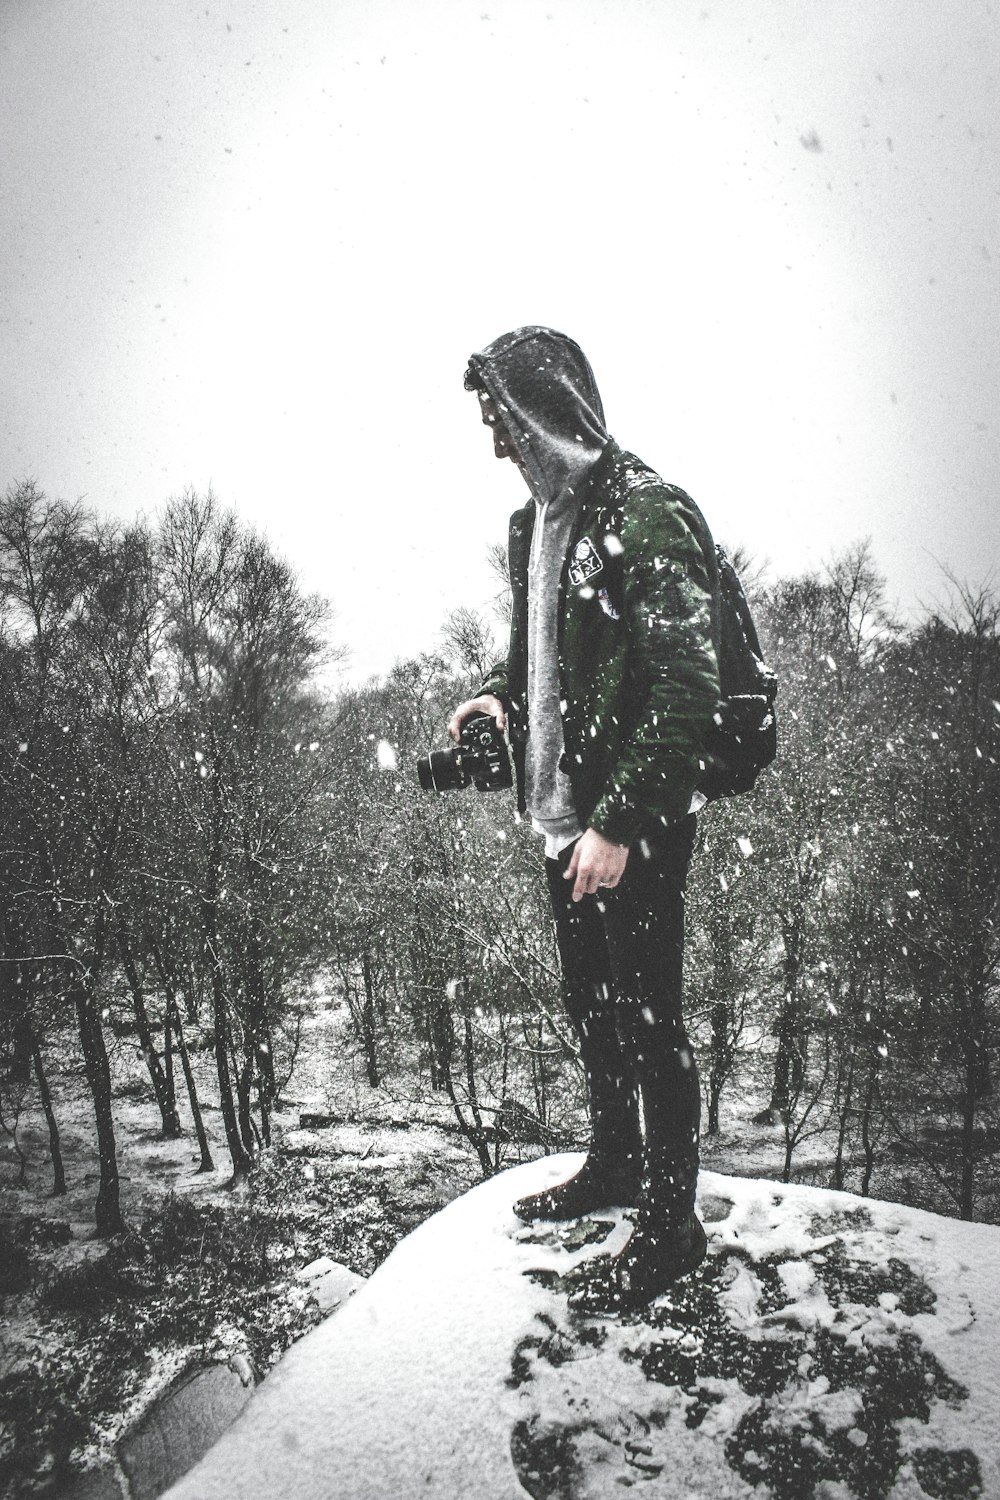 Mann in schwarzer Jacke und Hose steht auf schneebedecktem Boden